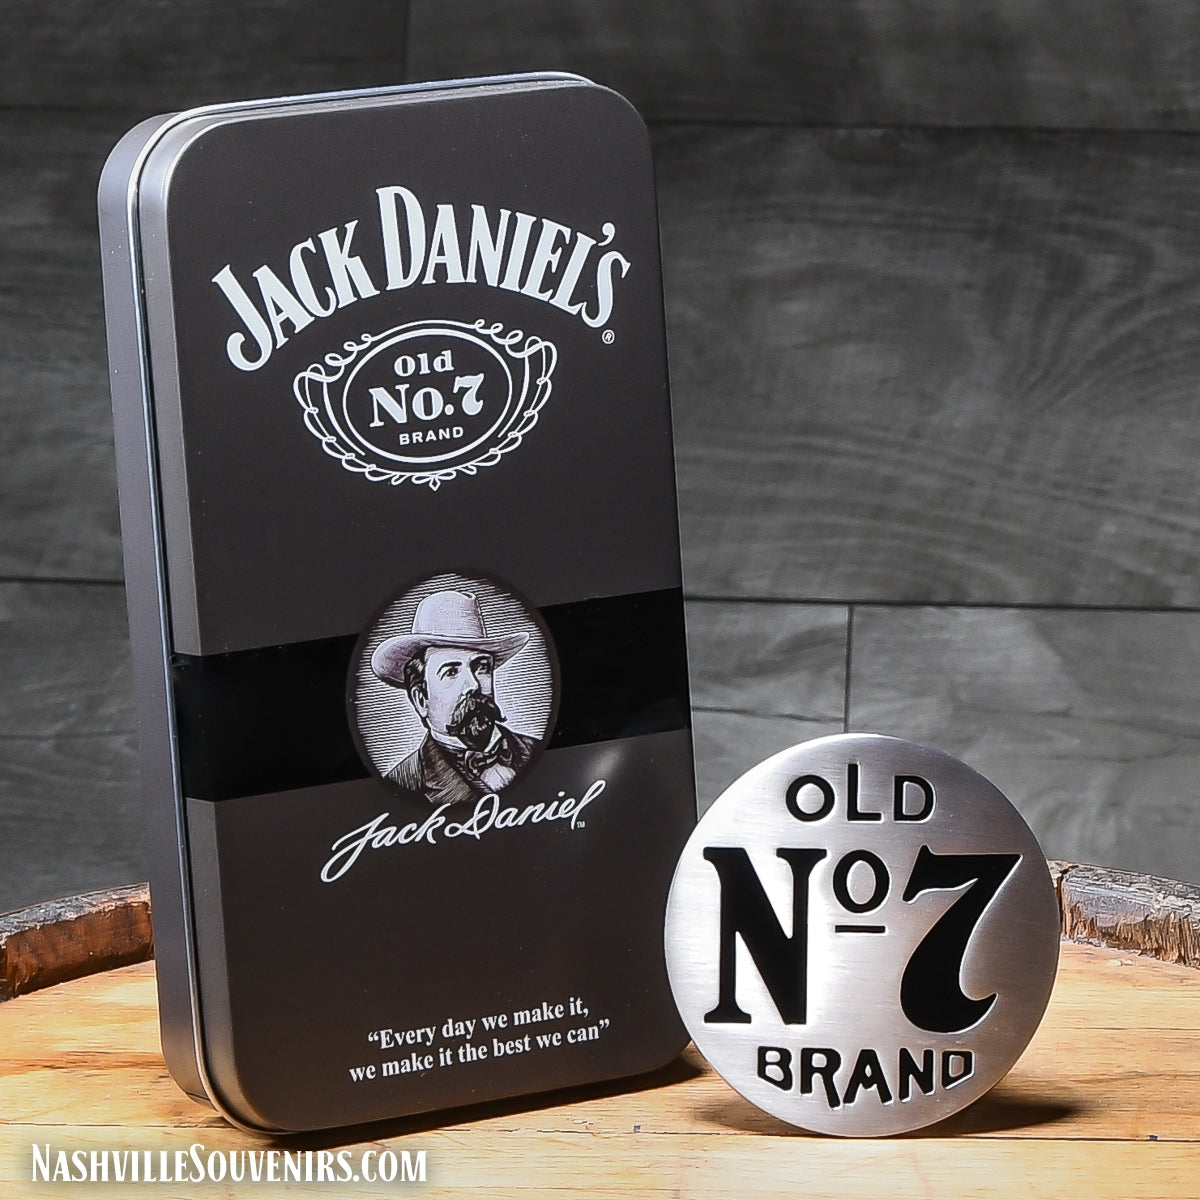 Jack Daniel's Old No.7 Brand round belt buckle.